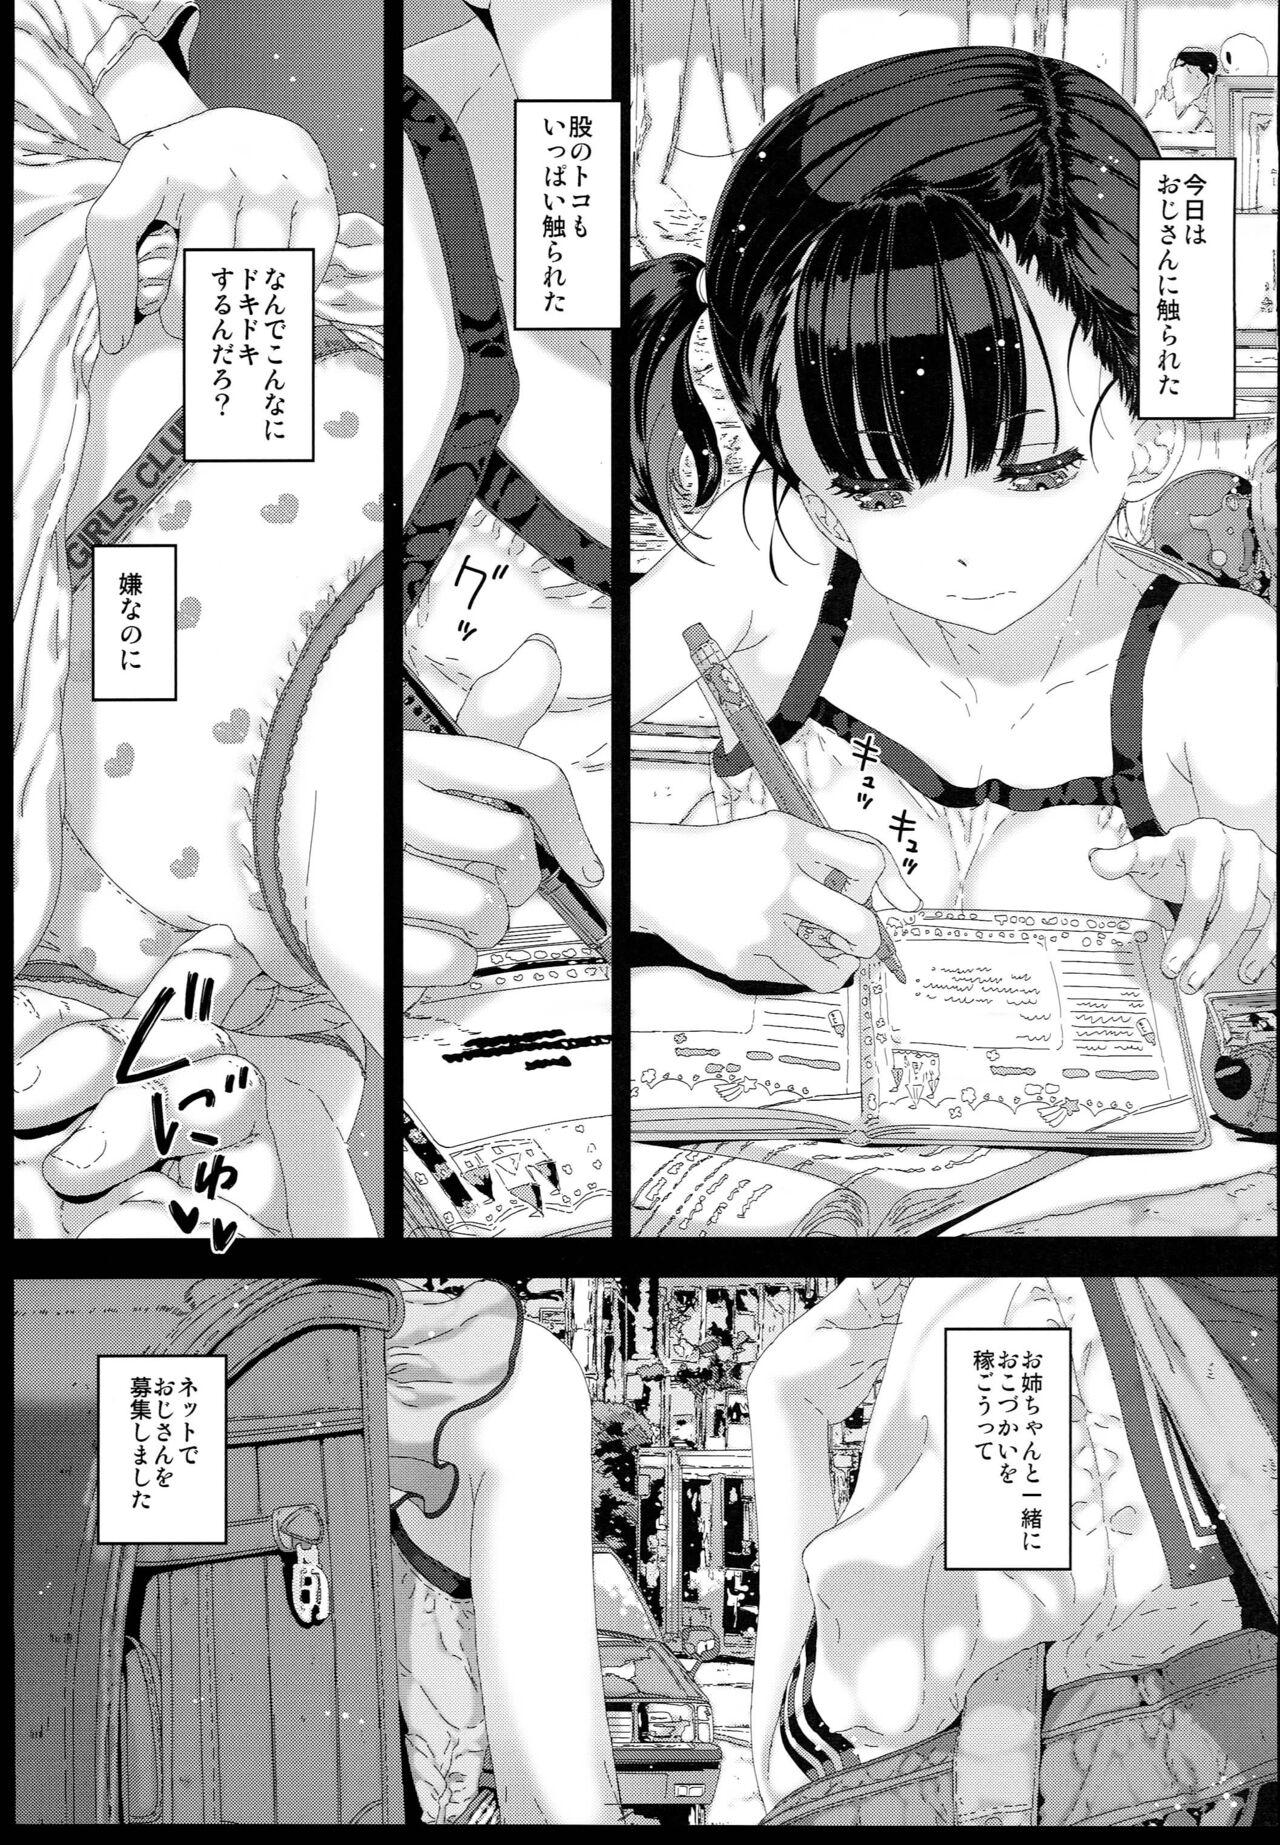 Atm Watashi ga Shiranai Oji-san to Nando mo 〇〇〇 Shichatta Hanashi. 1 - Original Italiano - Page 3